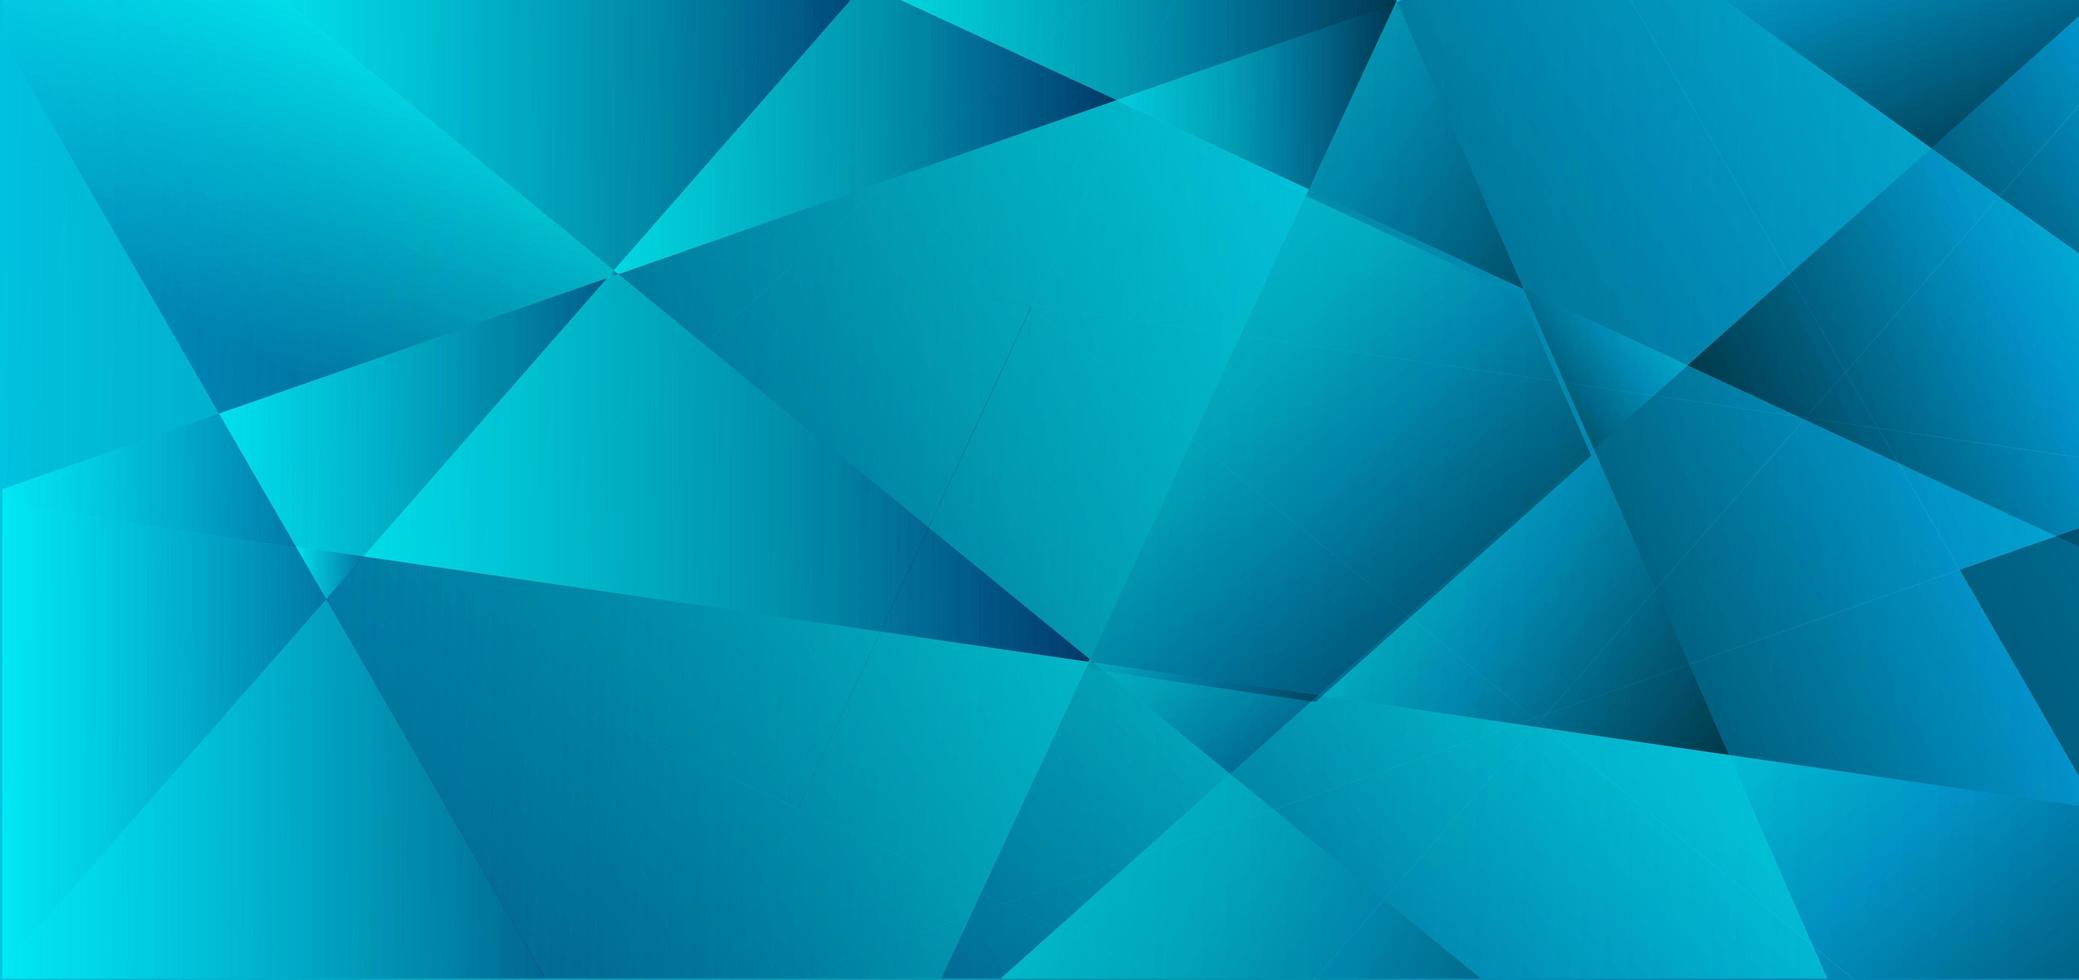 abstracte blauwe veelhoek achtergrond vector